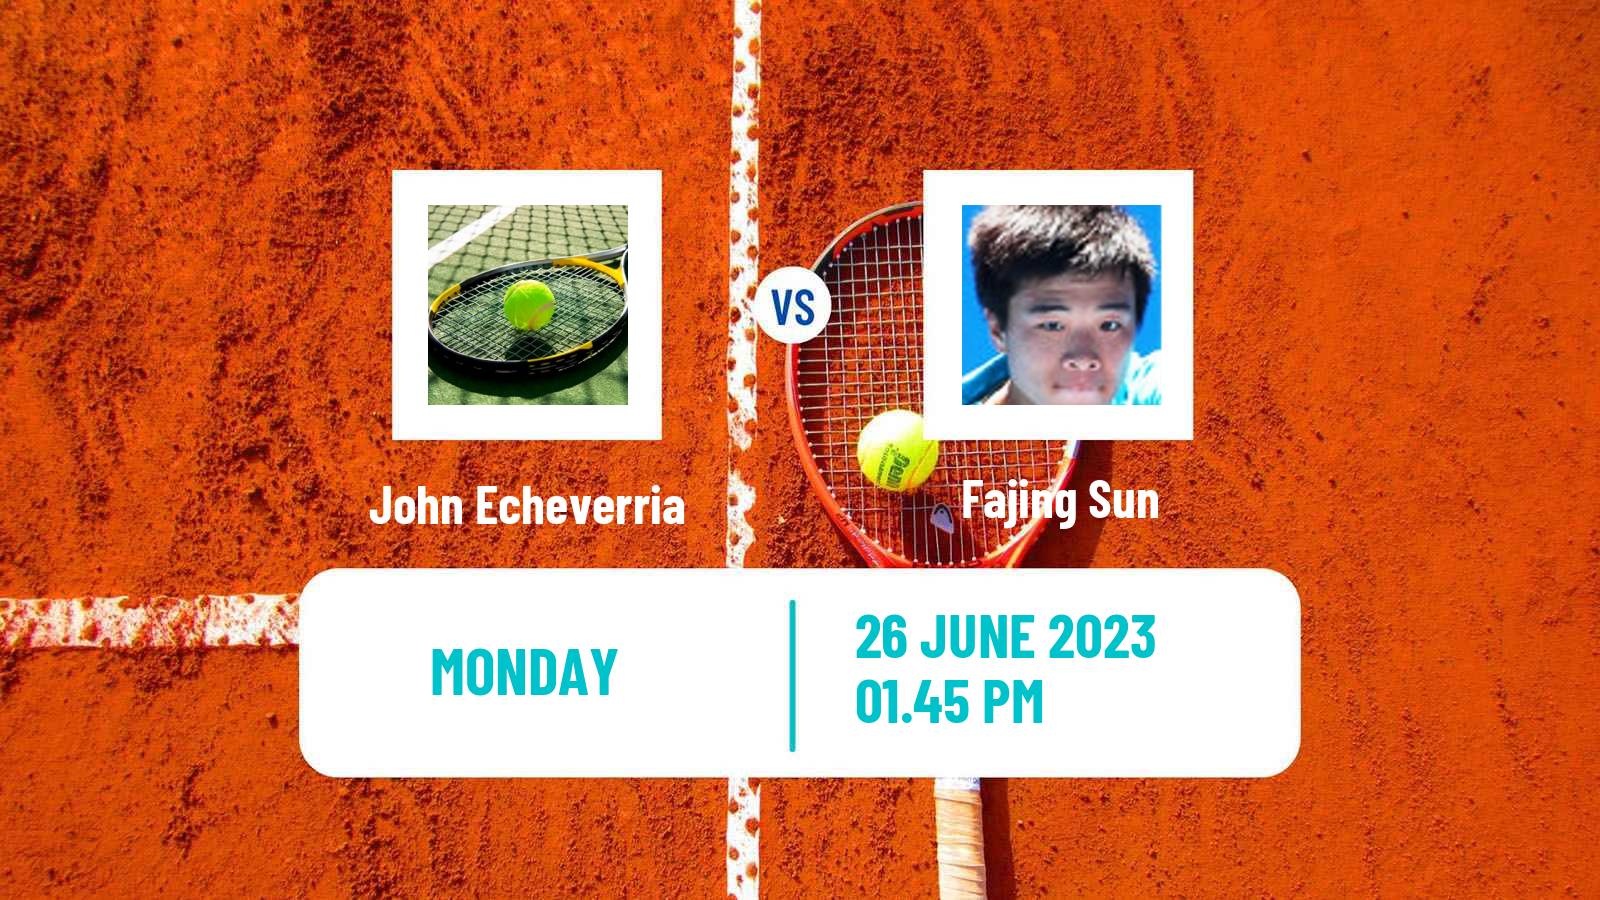 Tennis ITF M25 Bakio Men John Echeverria - Fajing Sun